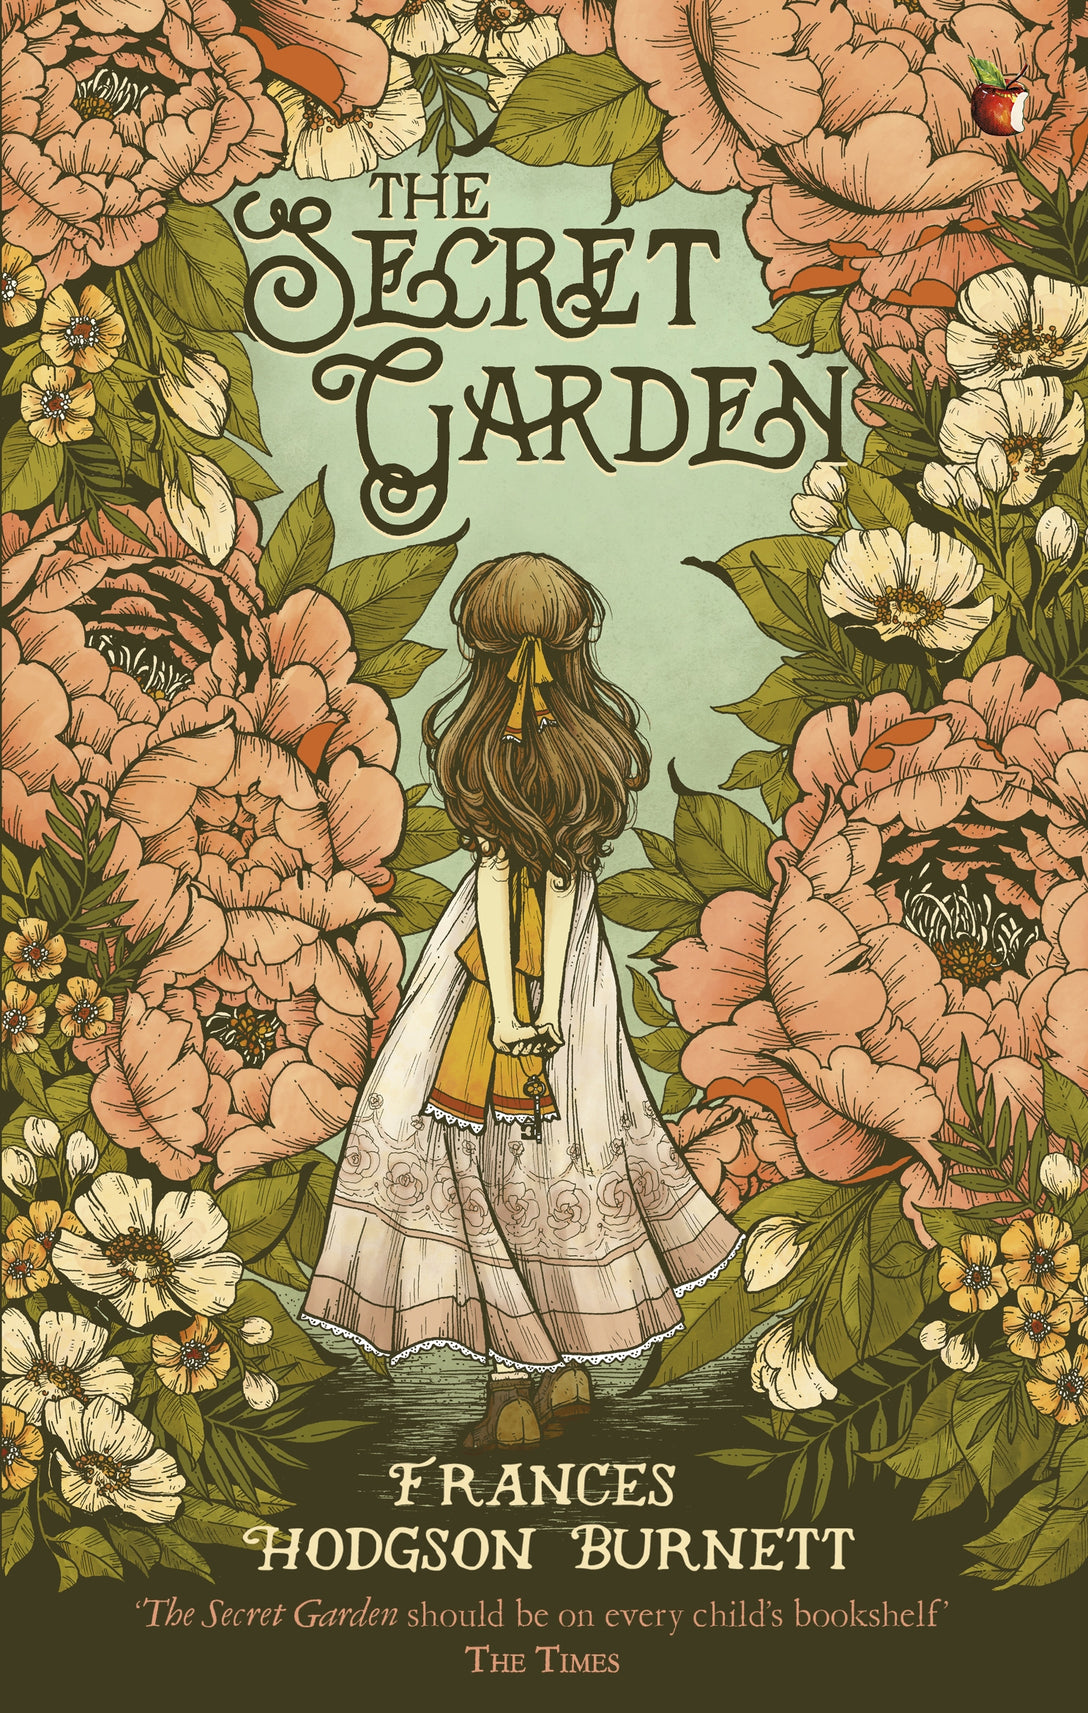 The Secret Garden by Frances Hodgson Burnett, Robert Ingpen, Frances Hodgson Burnett